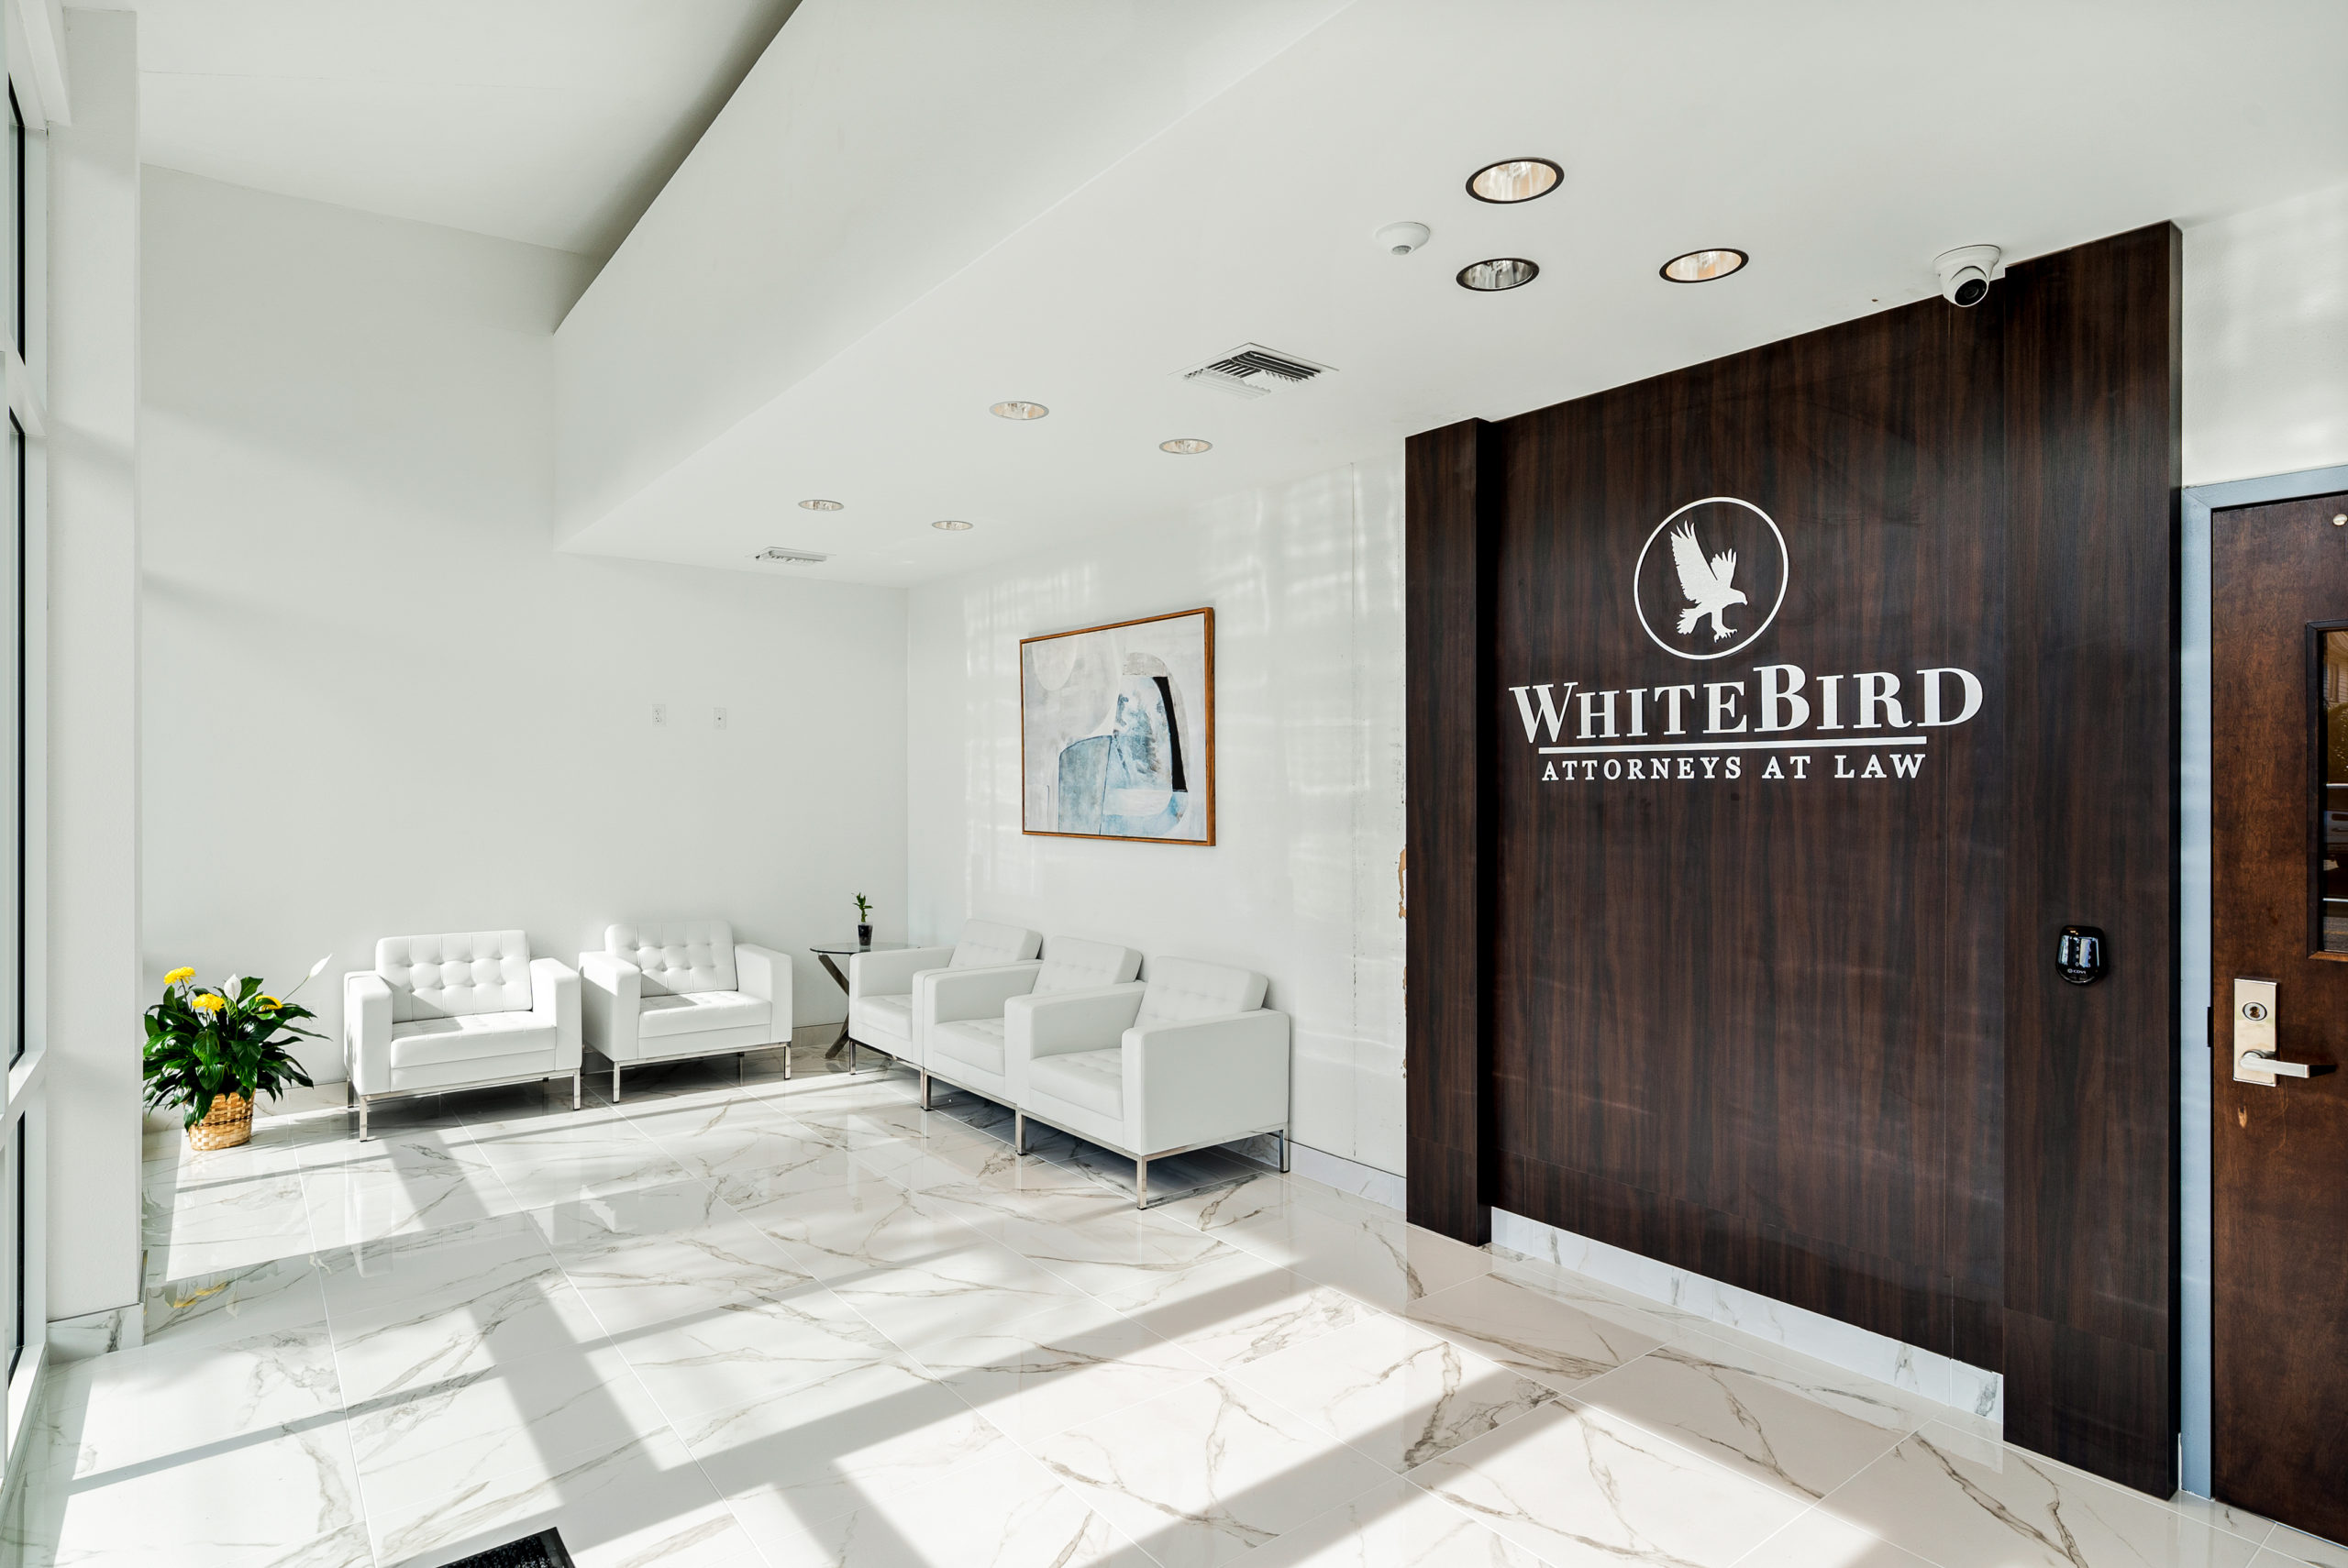 WhiteBird Law Office – Melbourne, FL